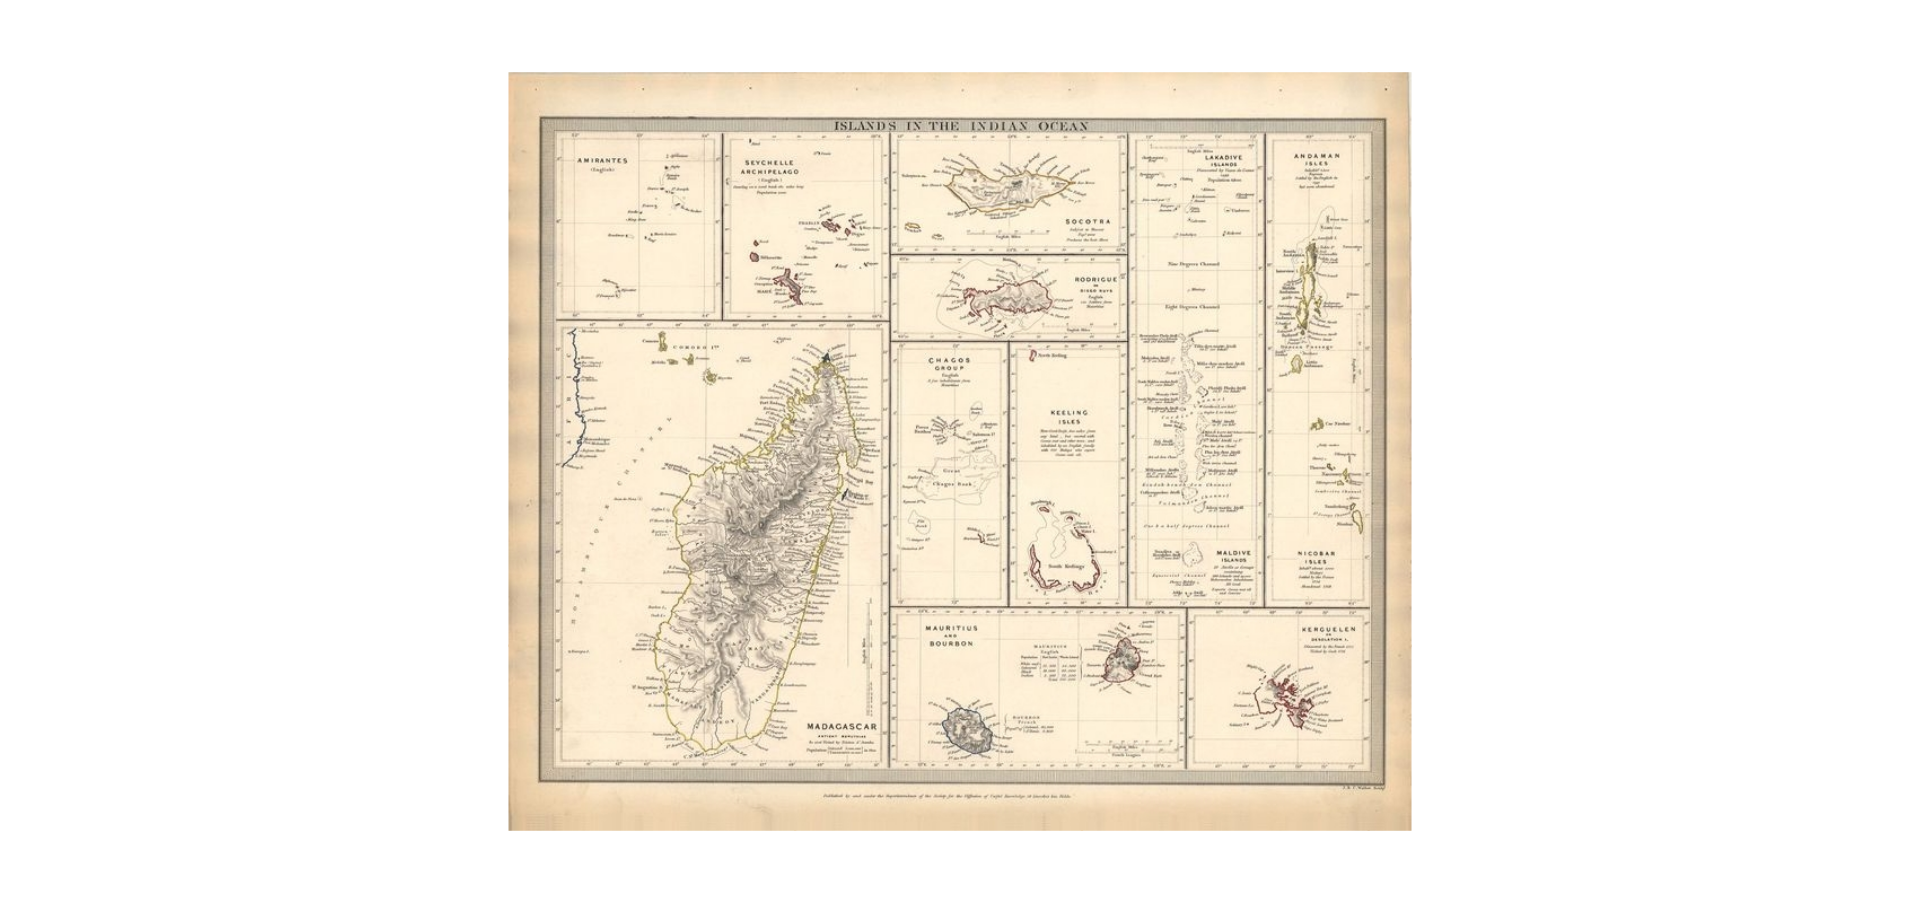 Indischer Ozean im Jahr 1844 von SDUK